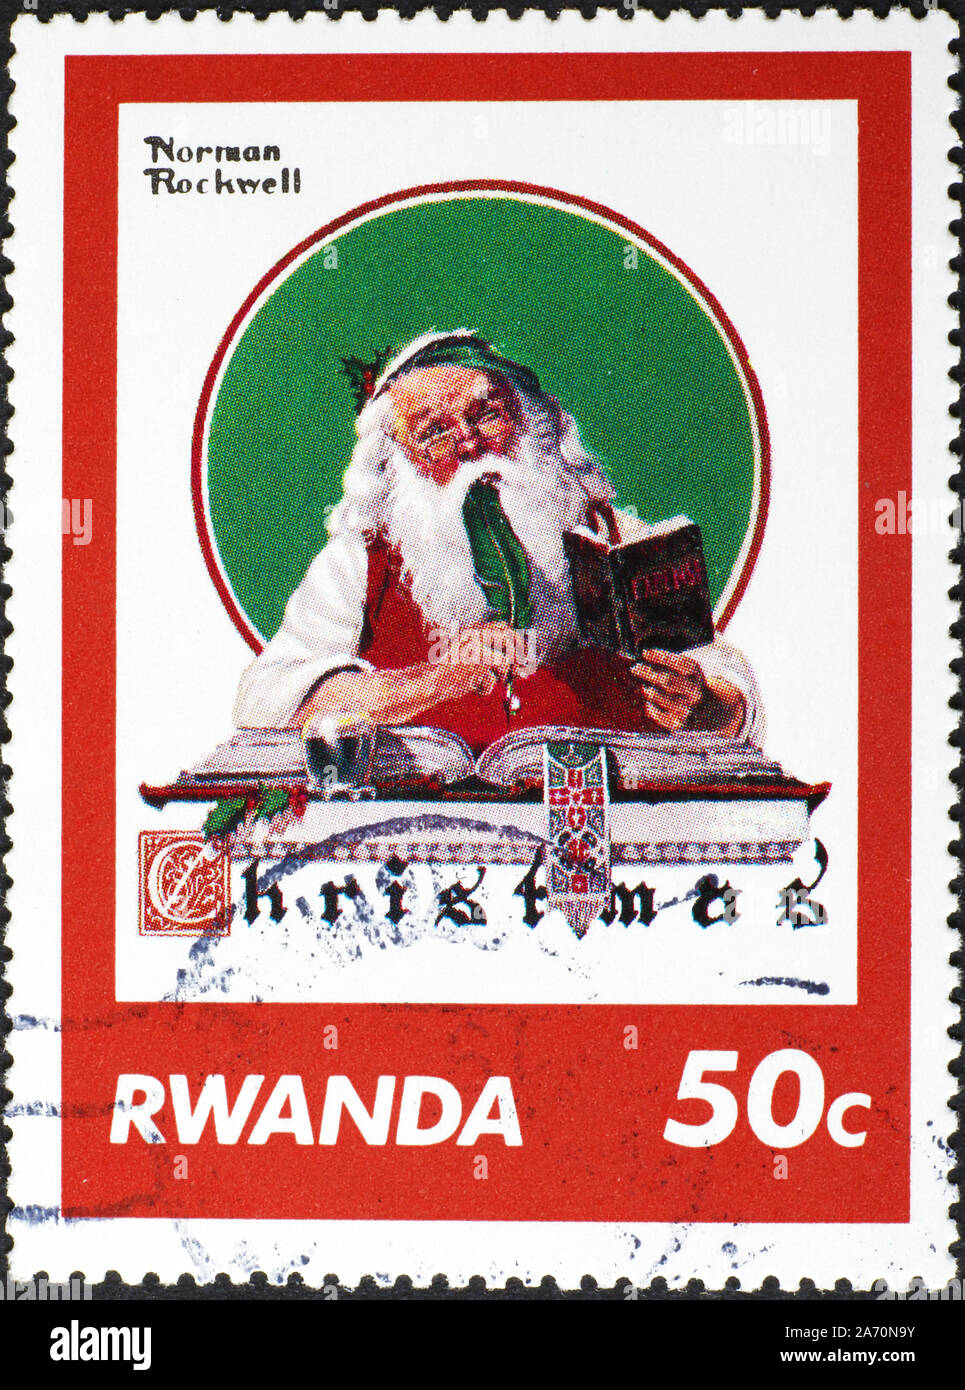 Portrait du père Noël par Norman Rockwell sur timbre-poste Banque D'Images